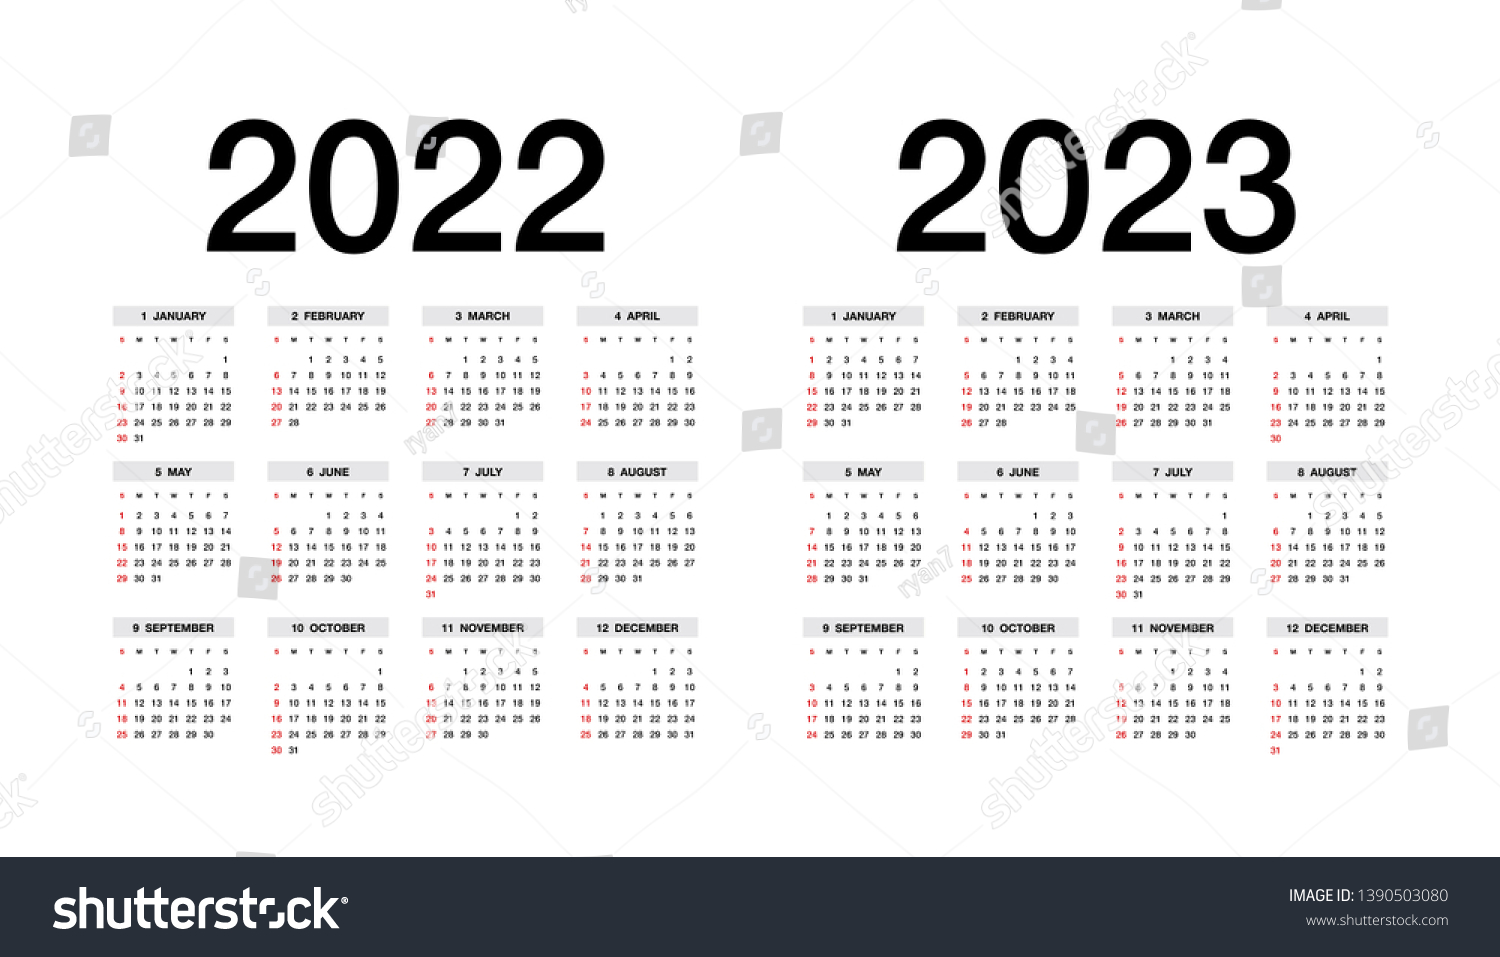 30 декабря 2023 год. Календарь 2022-2023. Календарь на 2023 год. Производственный календарь на 2022 и 2023 годы. Календарь на 2022-2023 учебный год.